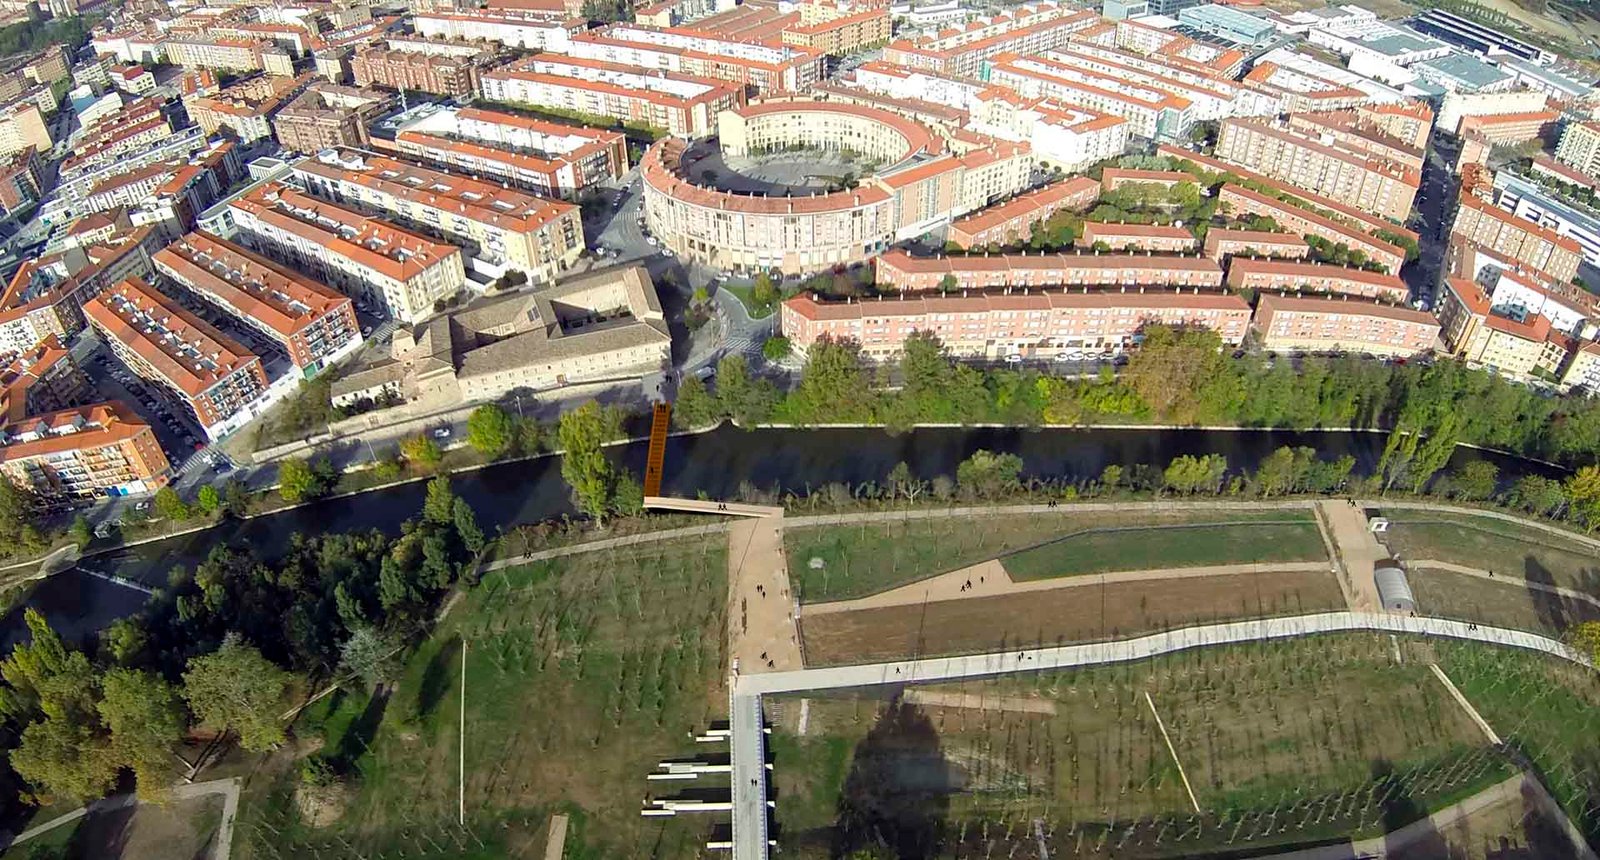 El Ayuntamiento invierte 2,3 millones de euros en la urbanización de la II fase del parque de Aranzadi que incluye plaza central, conexiones entre pasarelas y nuevos caminos